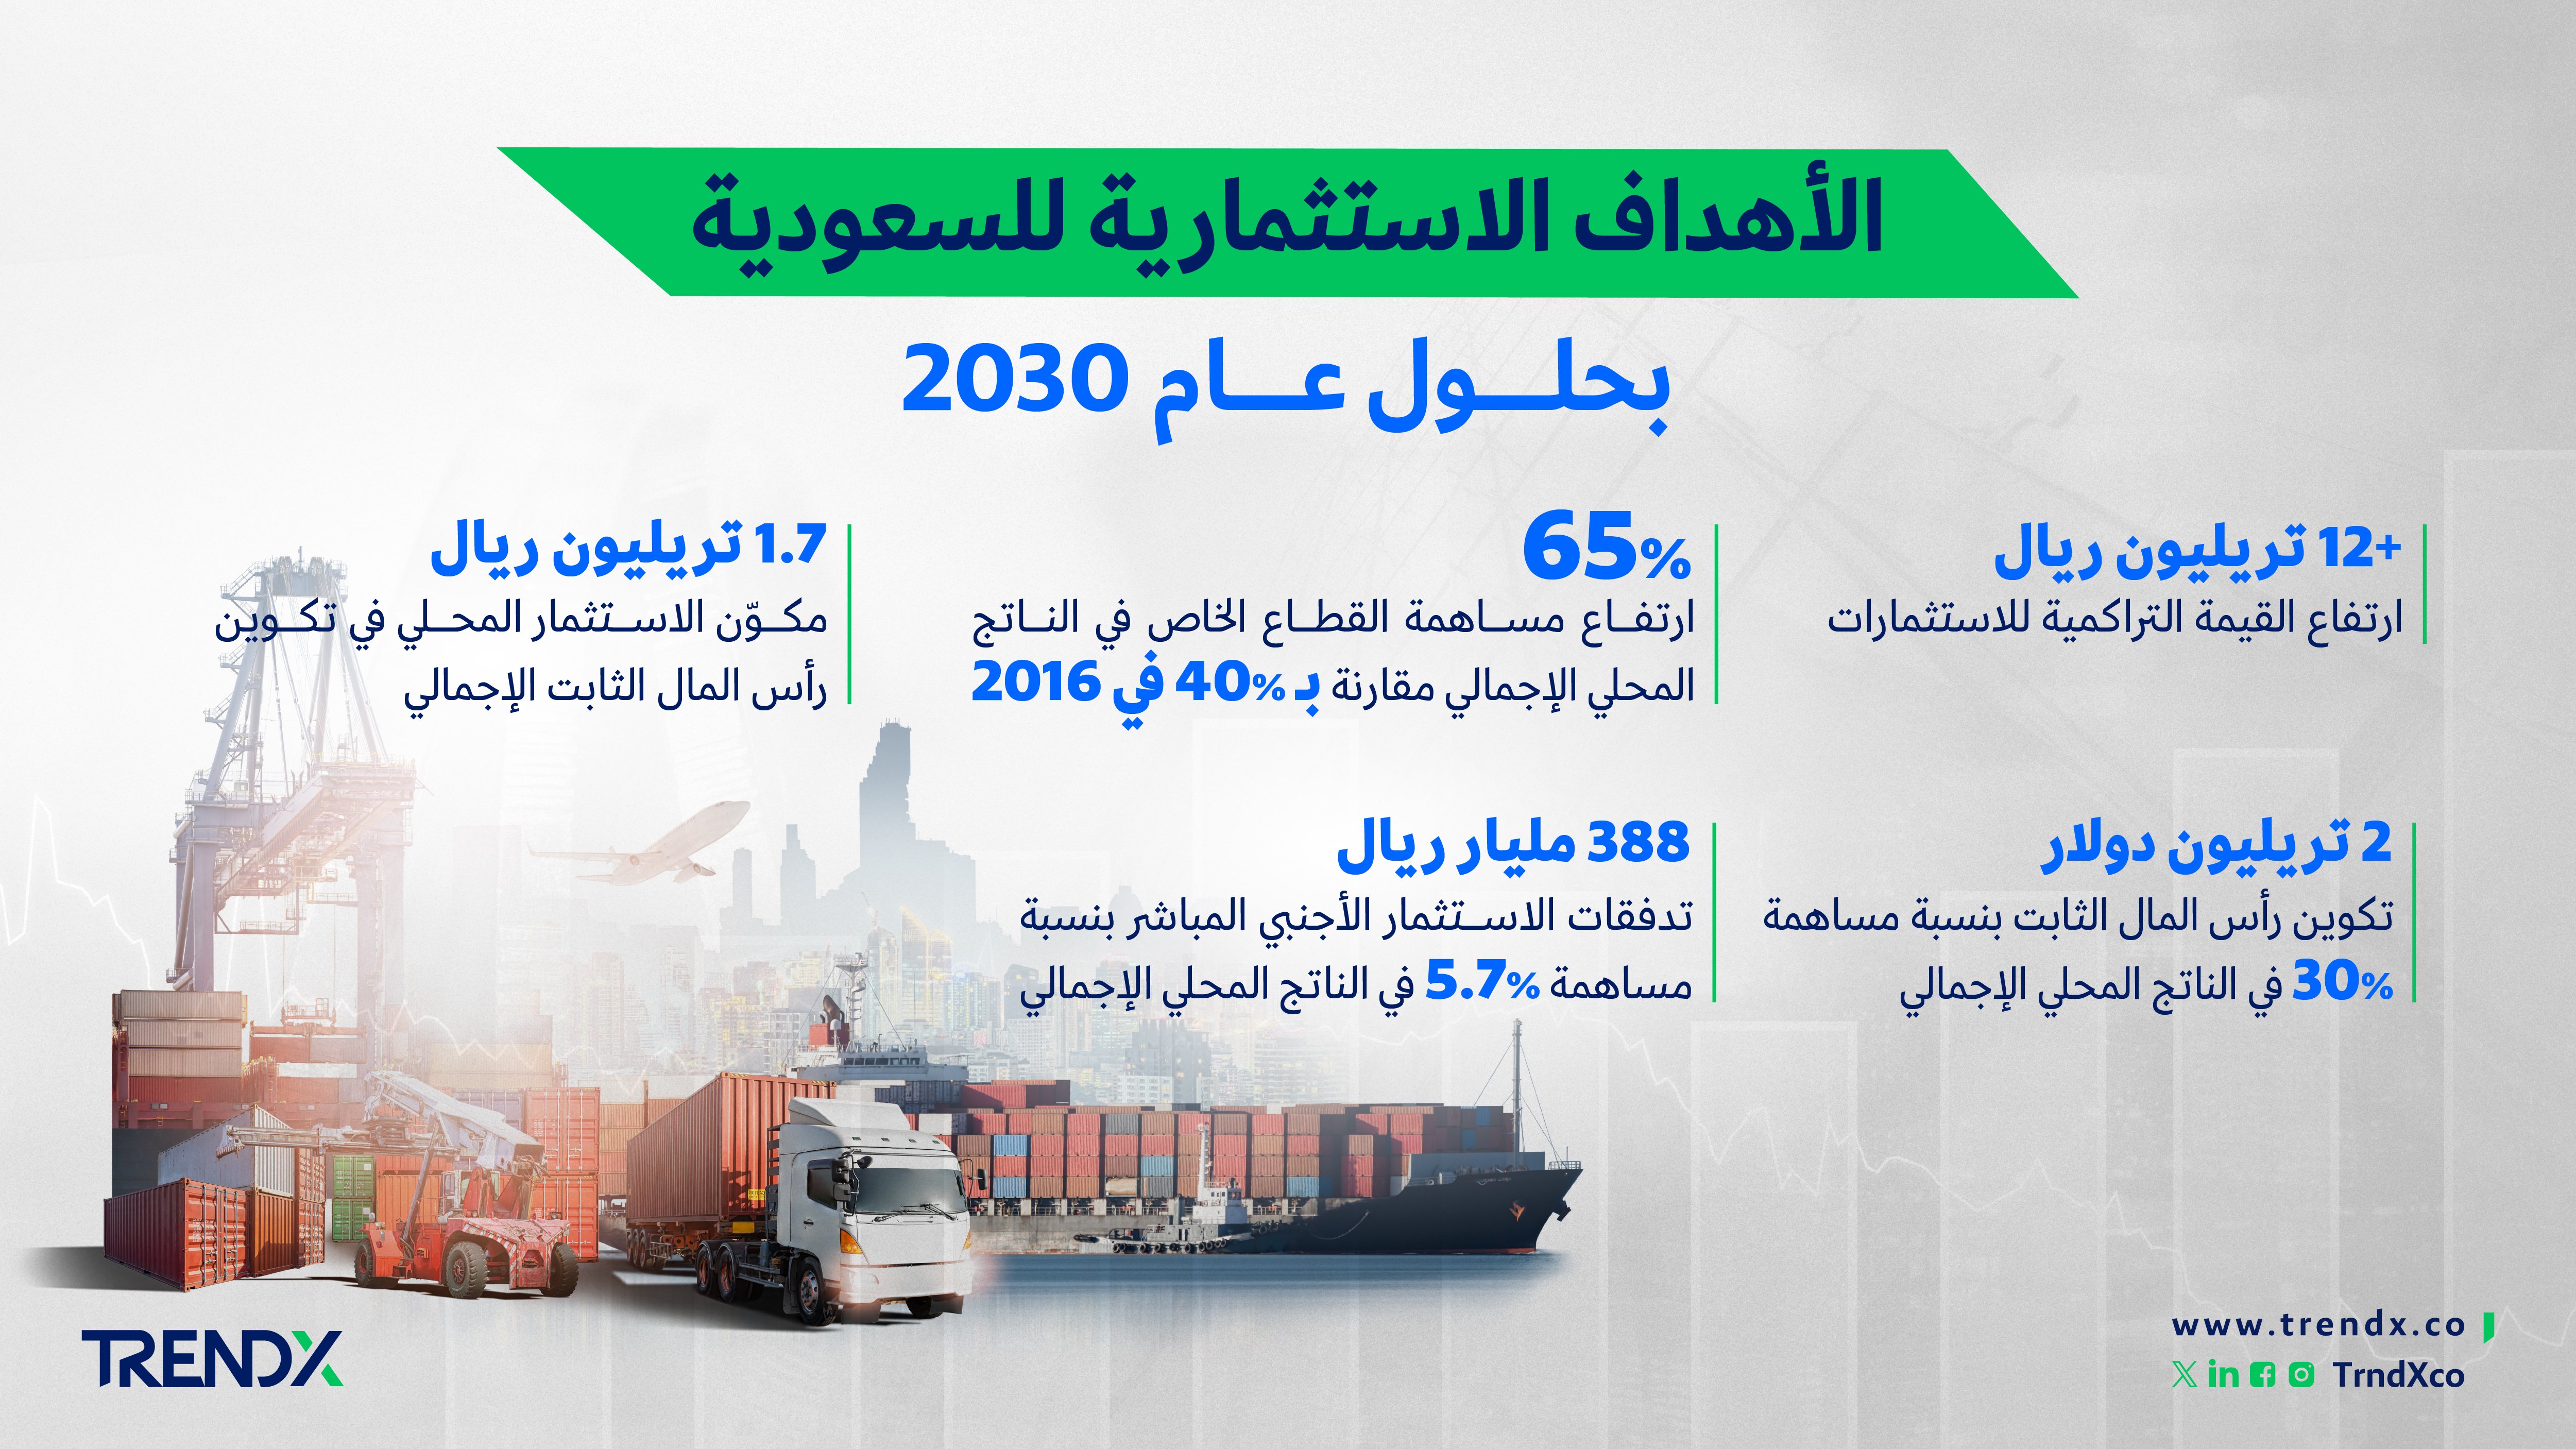 الأهداف الاستثمارية للسعودية بحلول عام 20301